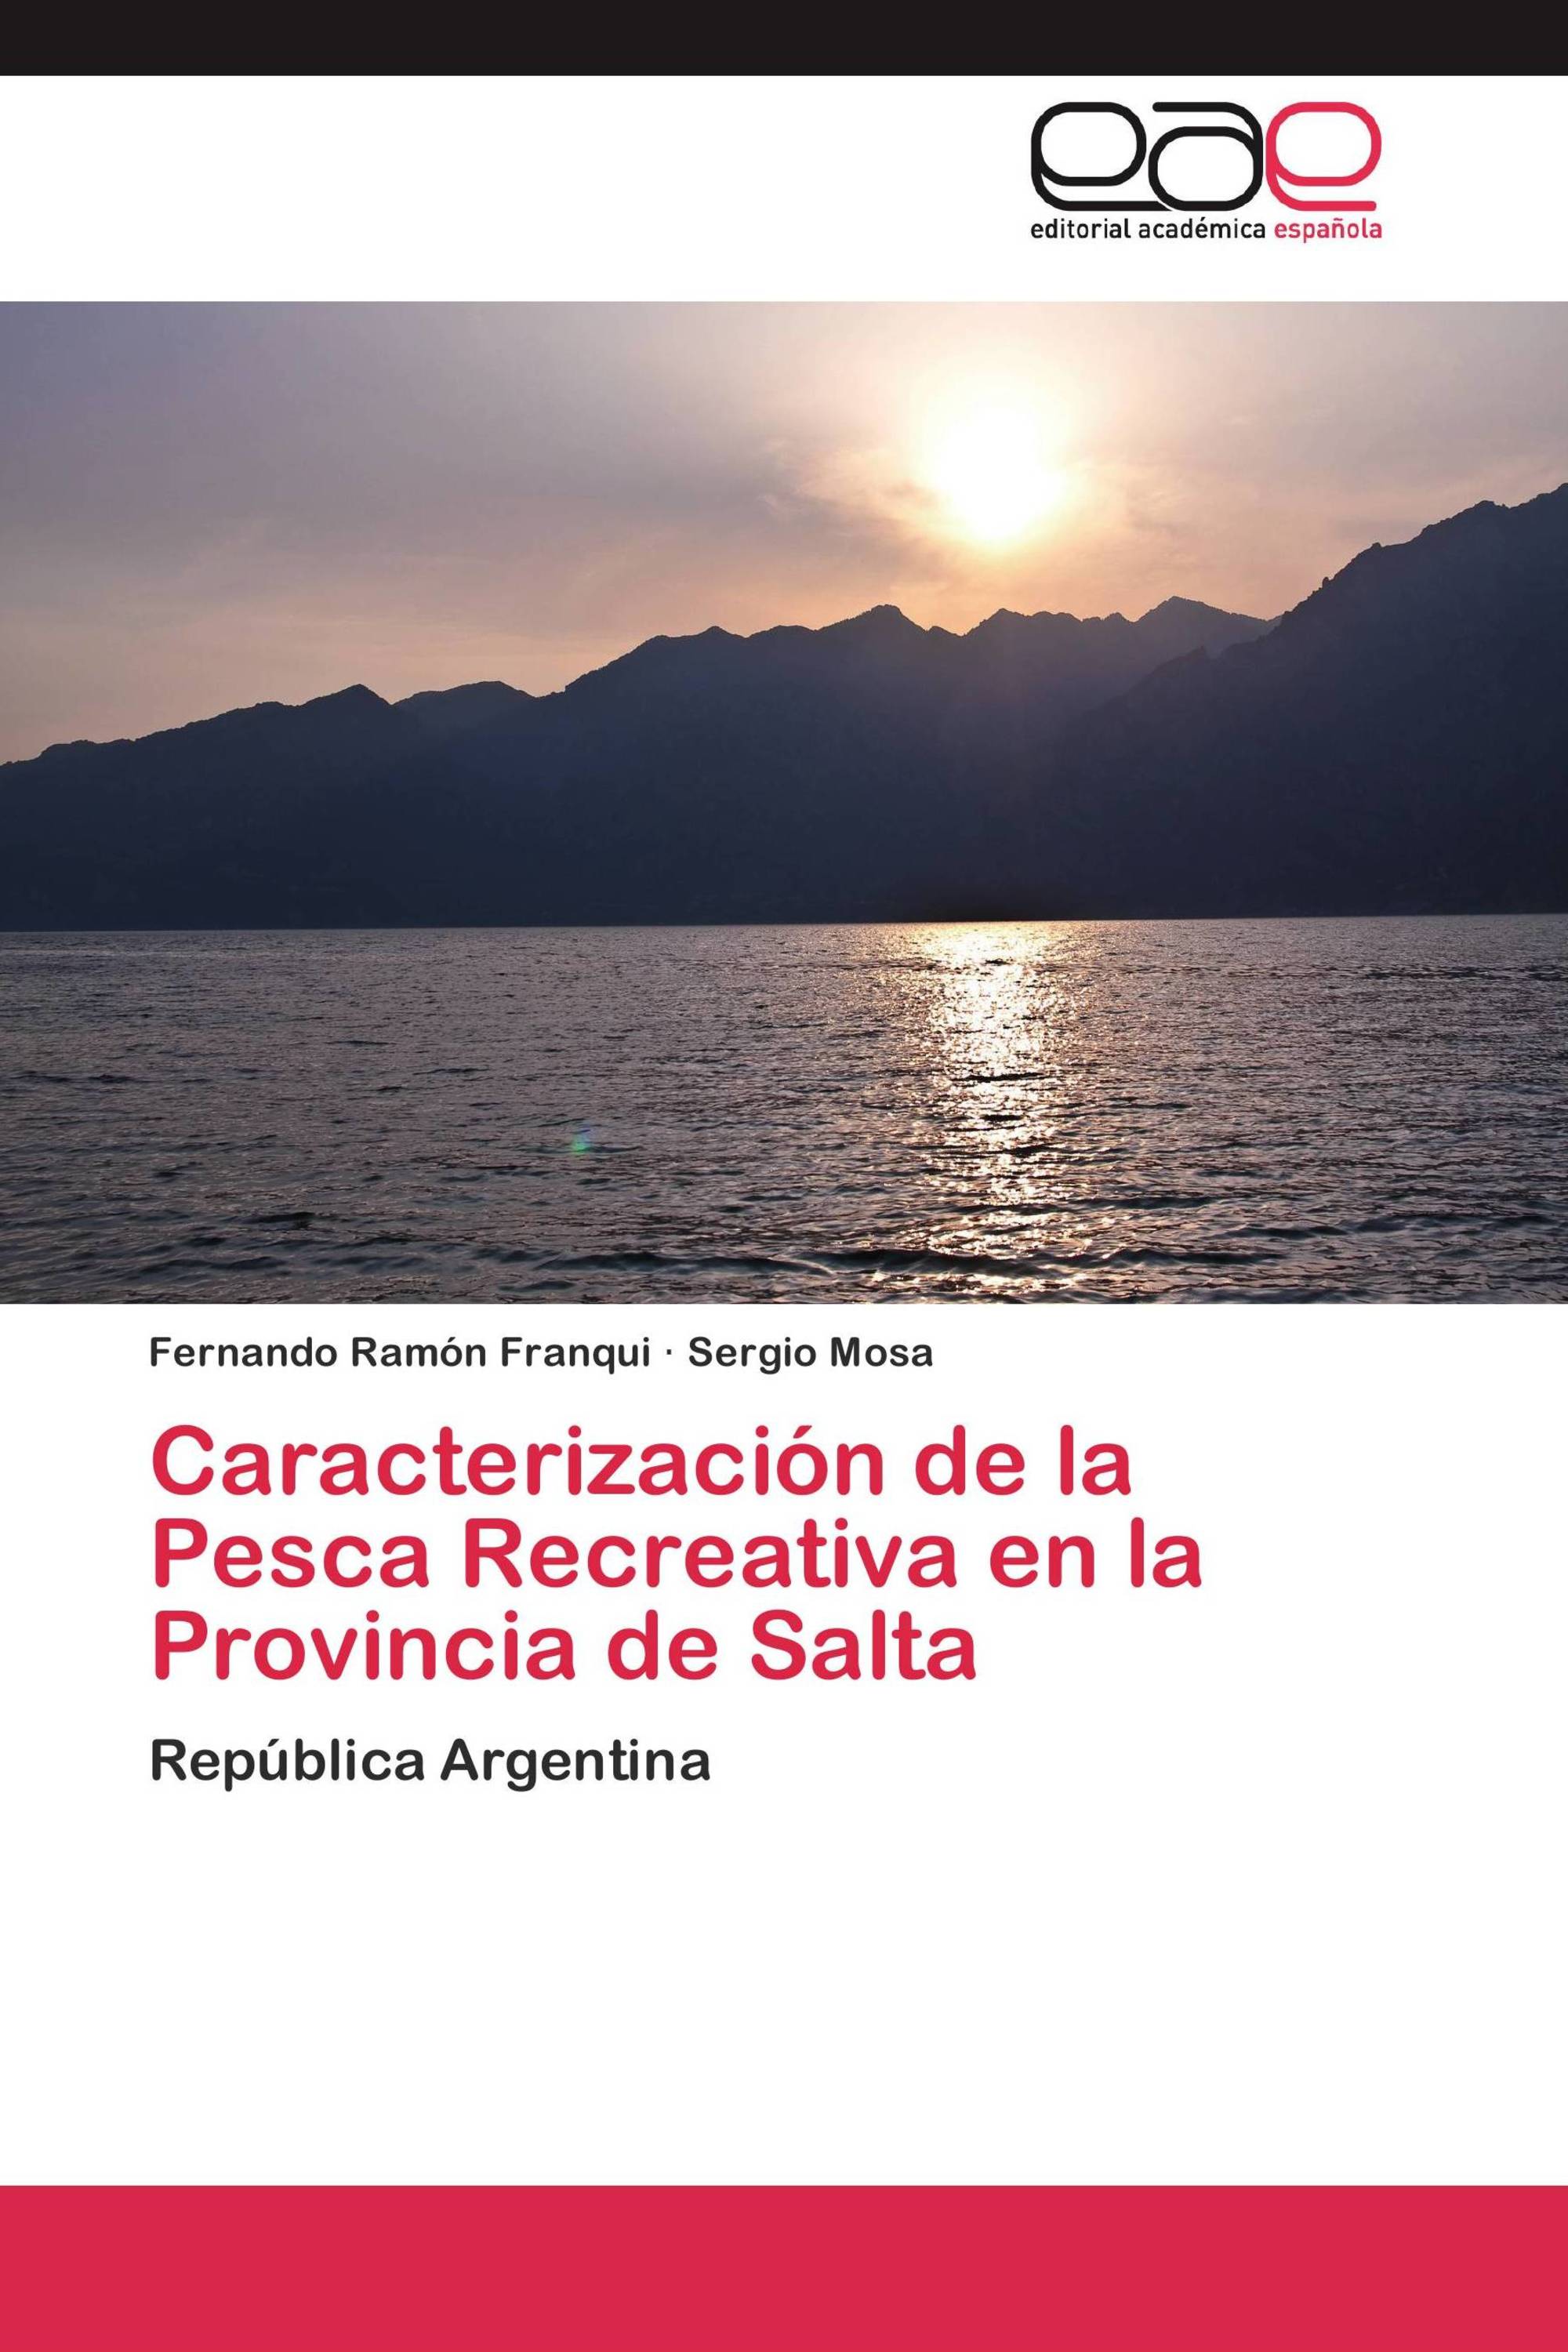 Caracterización de la Pesca Recreativa en la Provincia de Salta